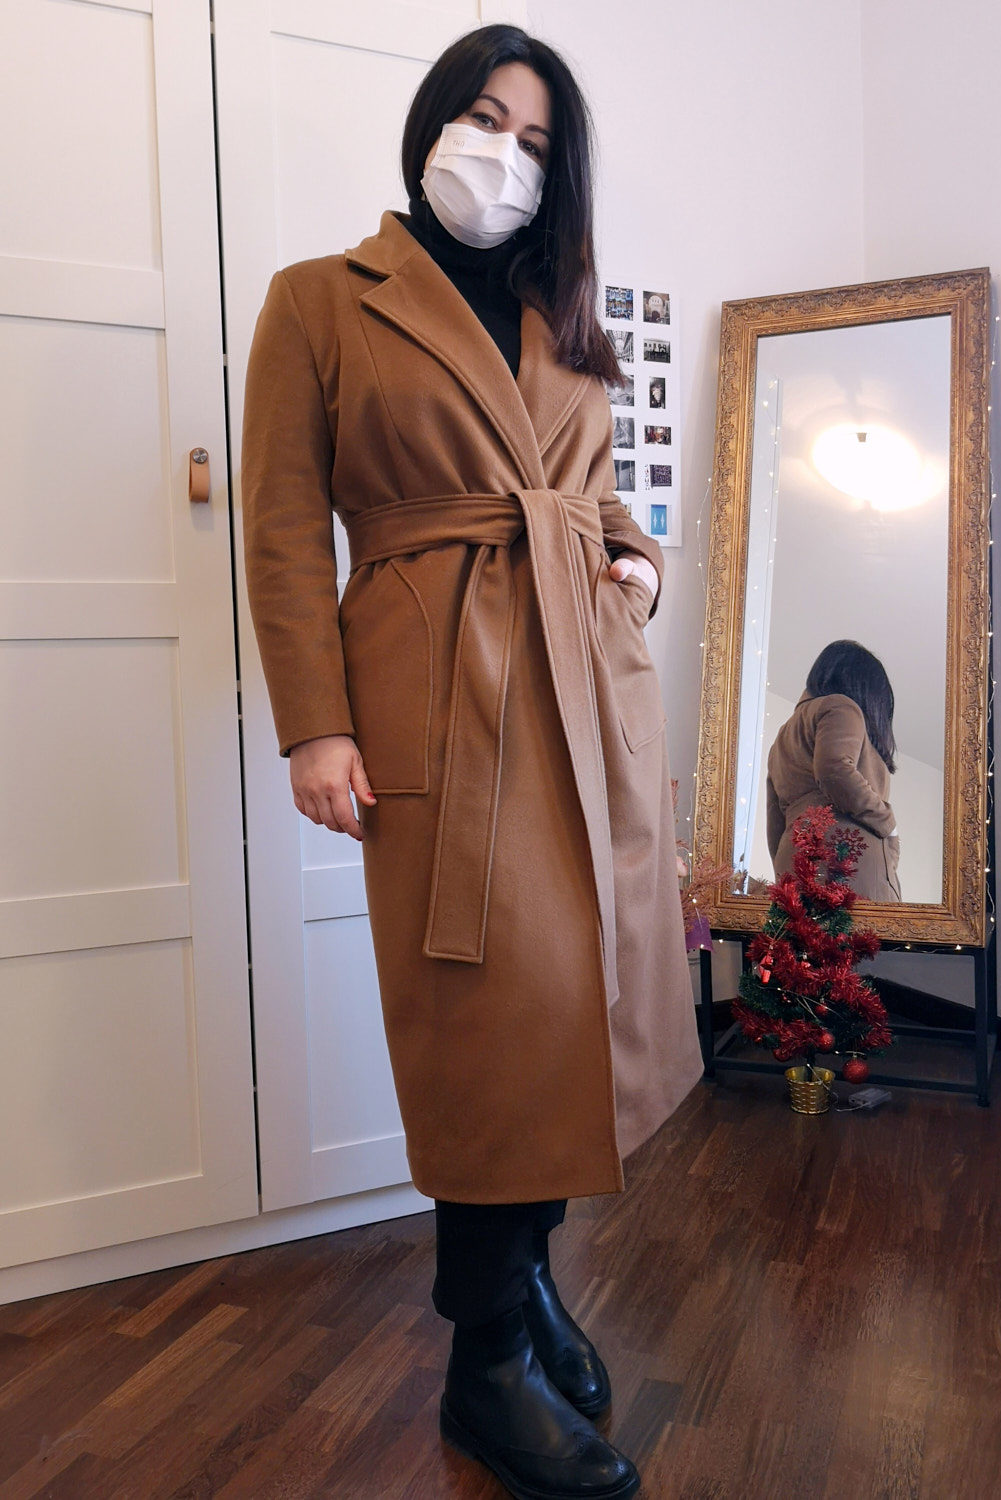 Barbara si specchia mentre indossa il suo nuovo cappotto color cammello fatto su misura da Chiara Cascioli